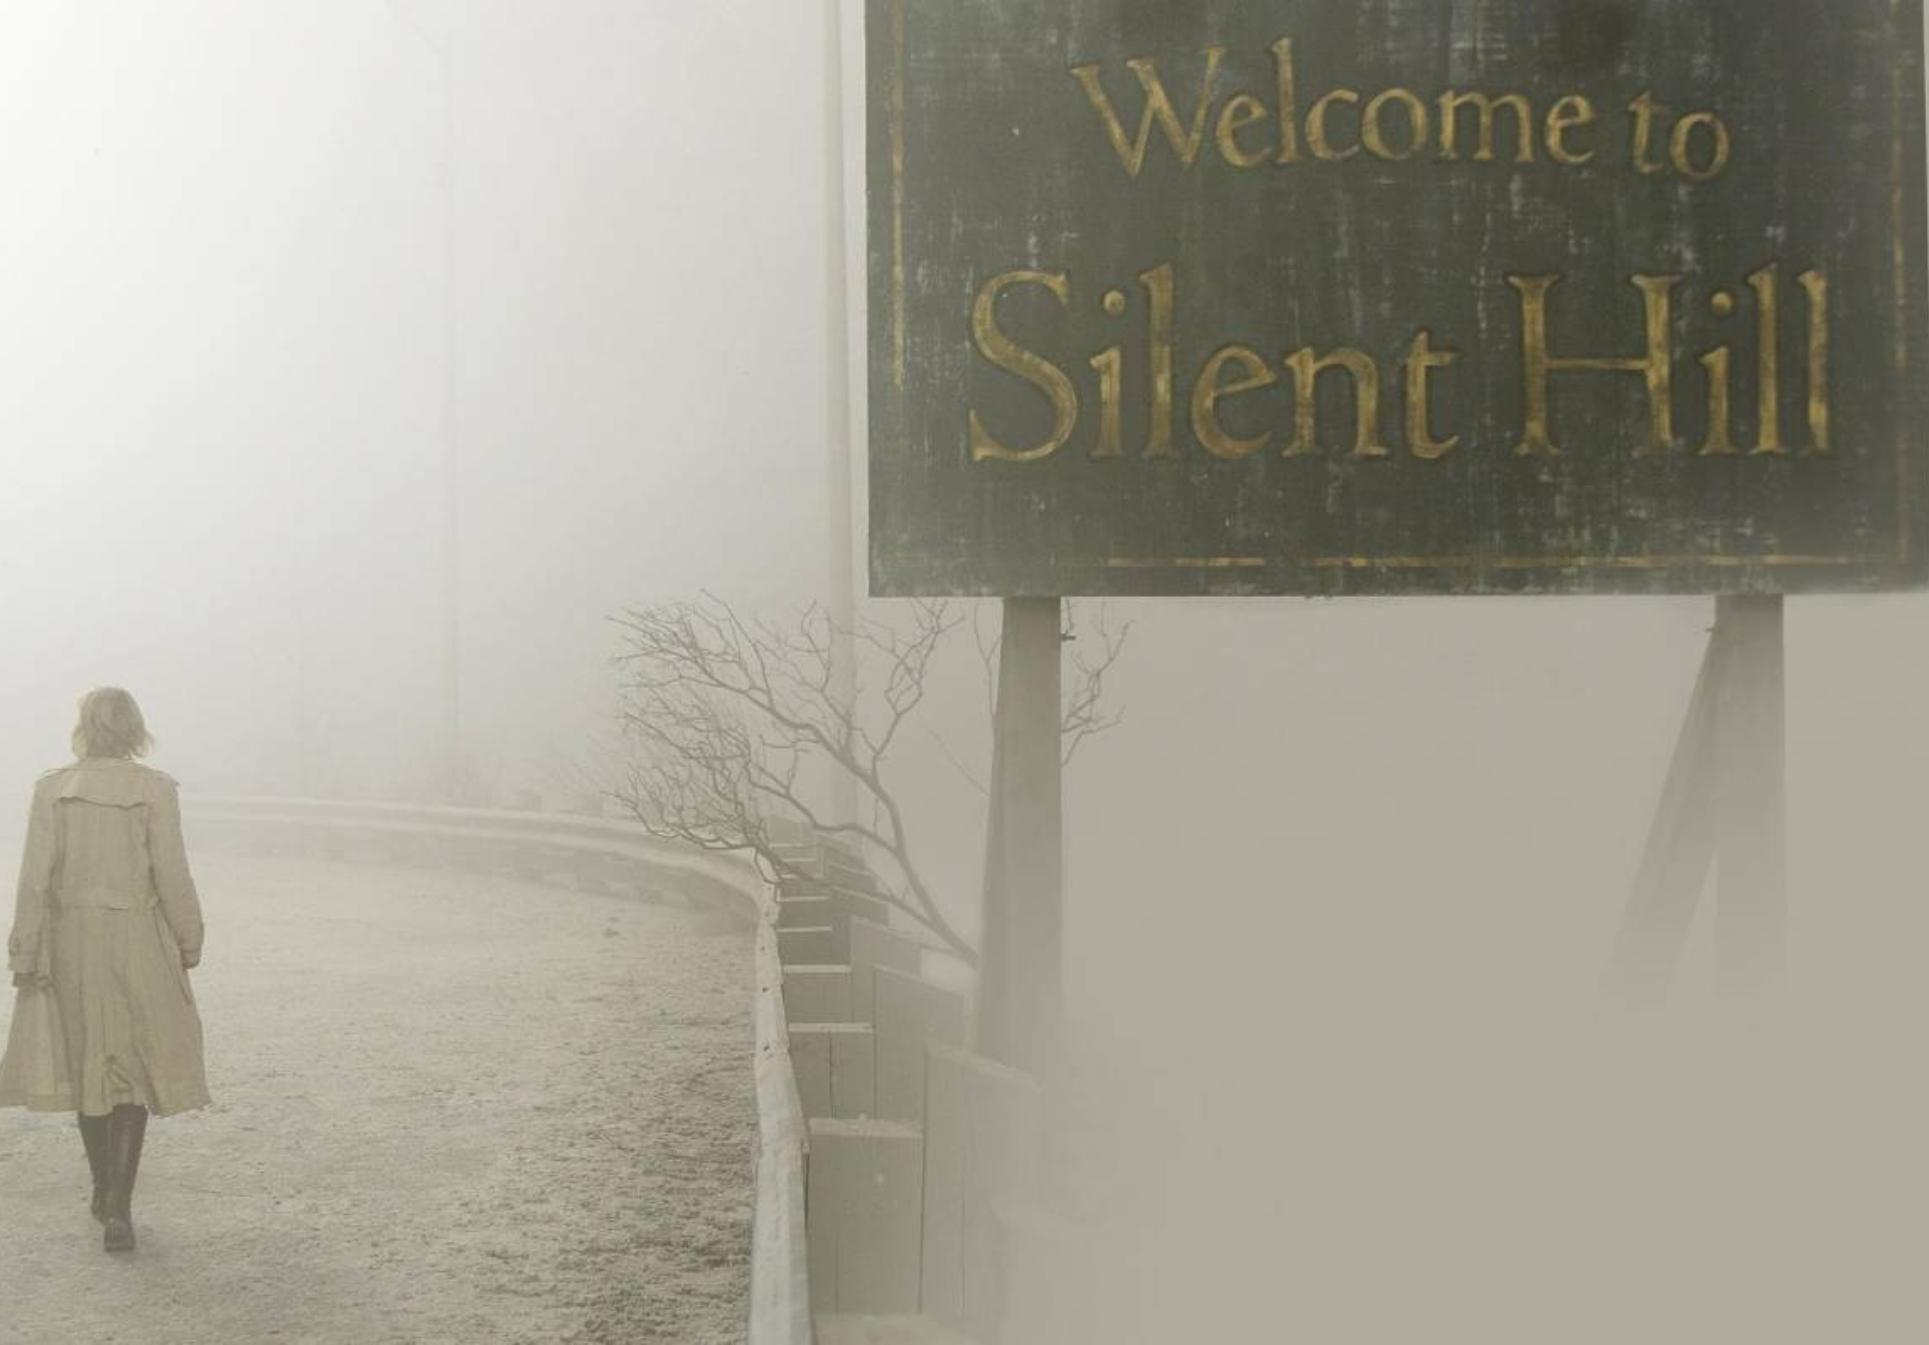 Silent Hill: Centralia η αληθινή πόλη – φάντασμα που «σκότωνε» τους κατοίκους της